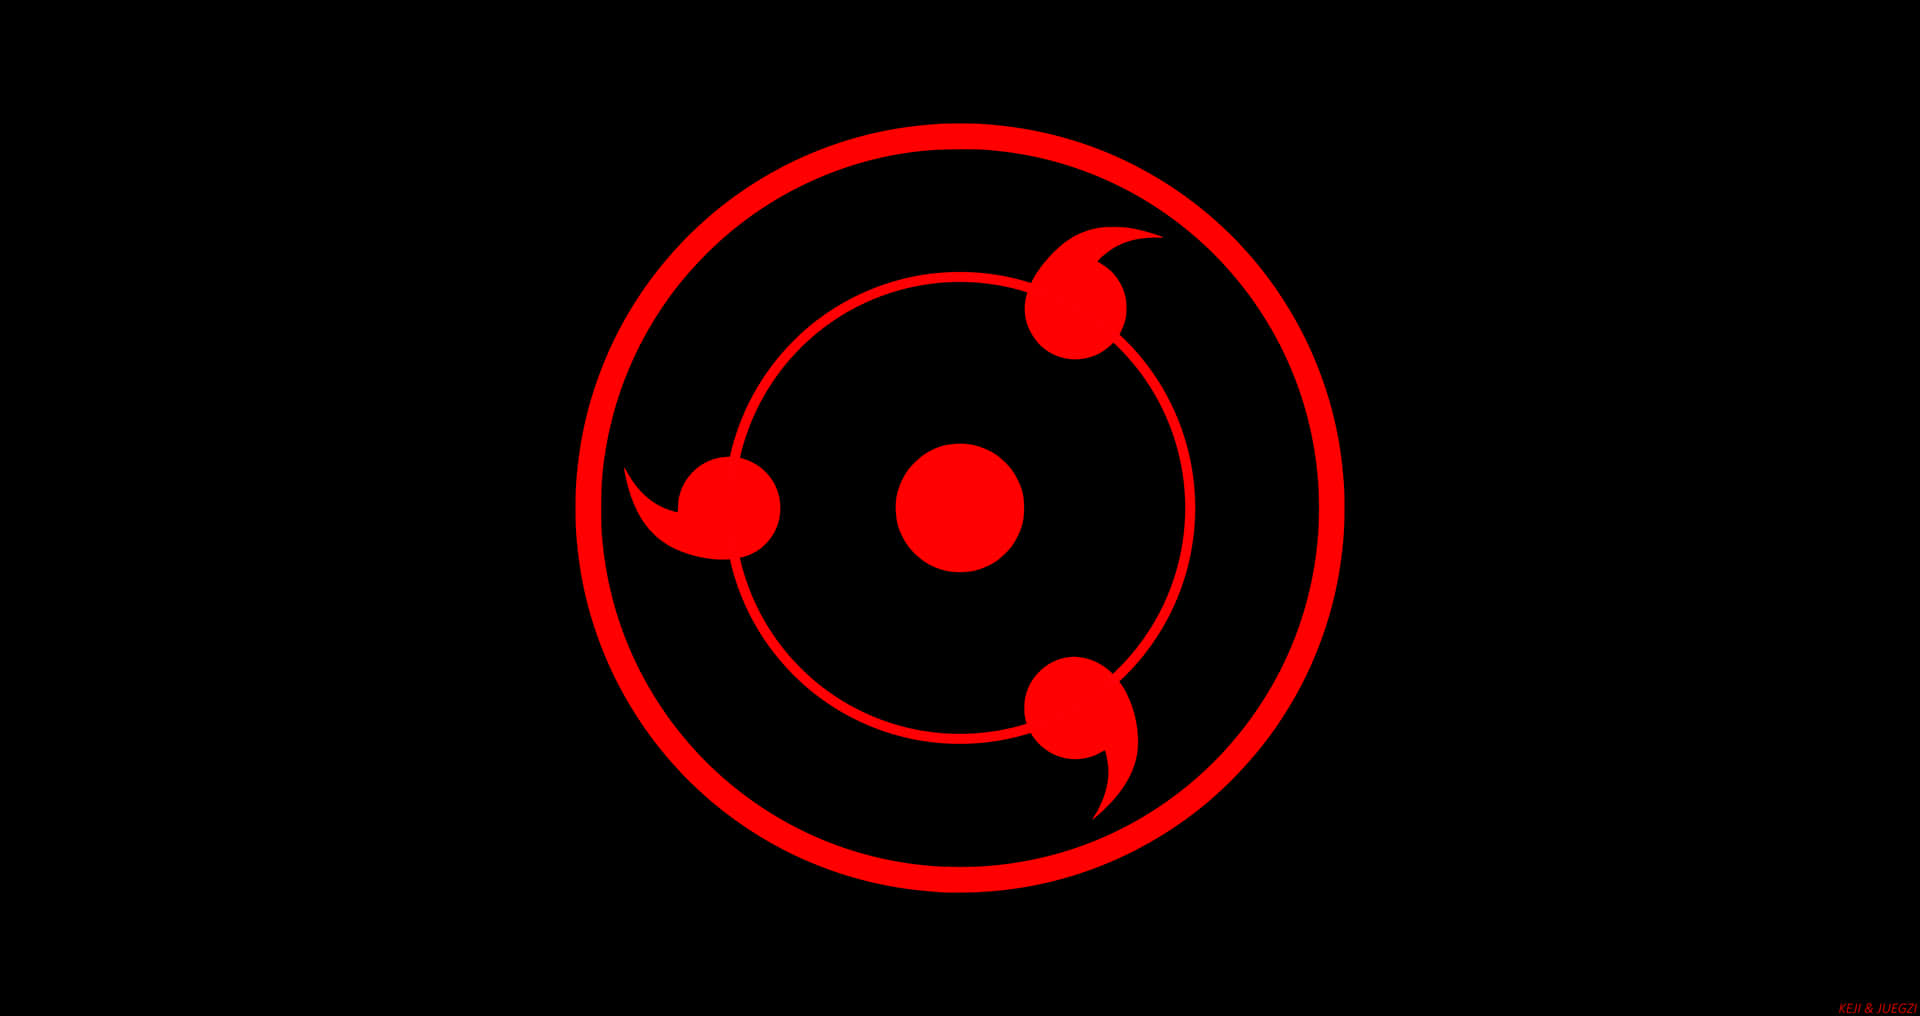 Einroter Kreis Mit Einem Roten Kreis In Der Mitte Wallpaper